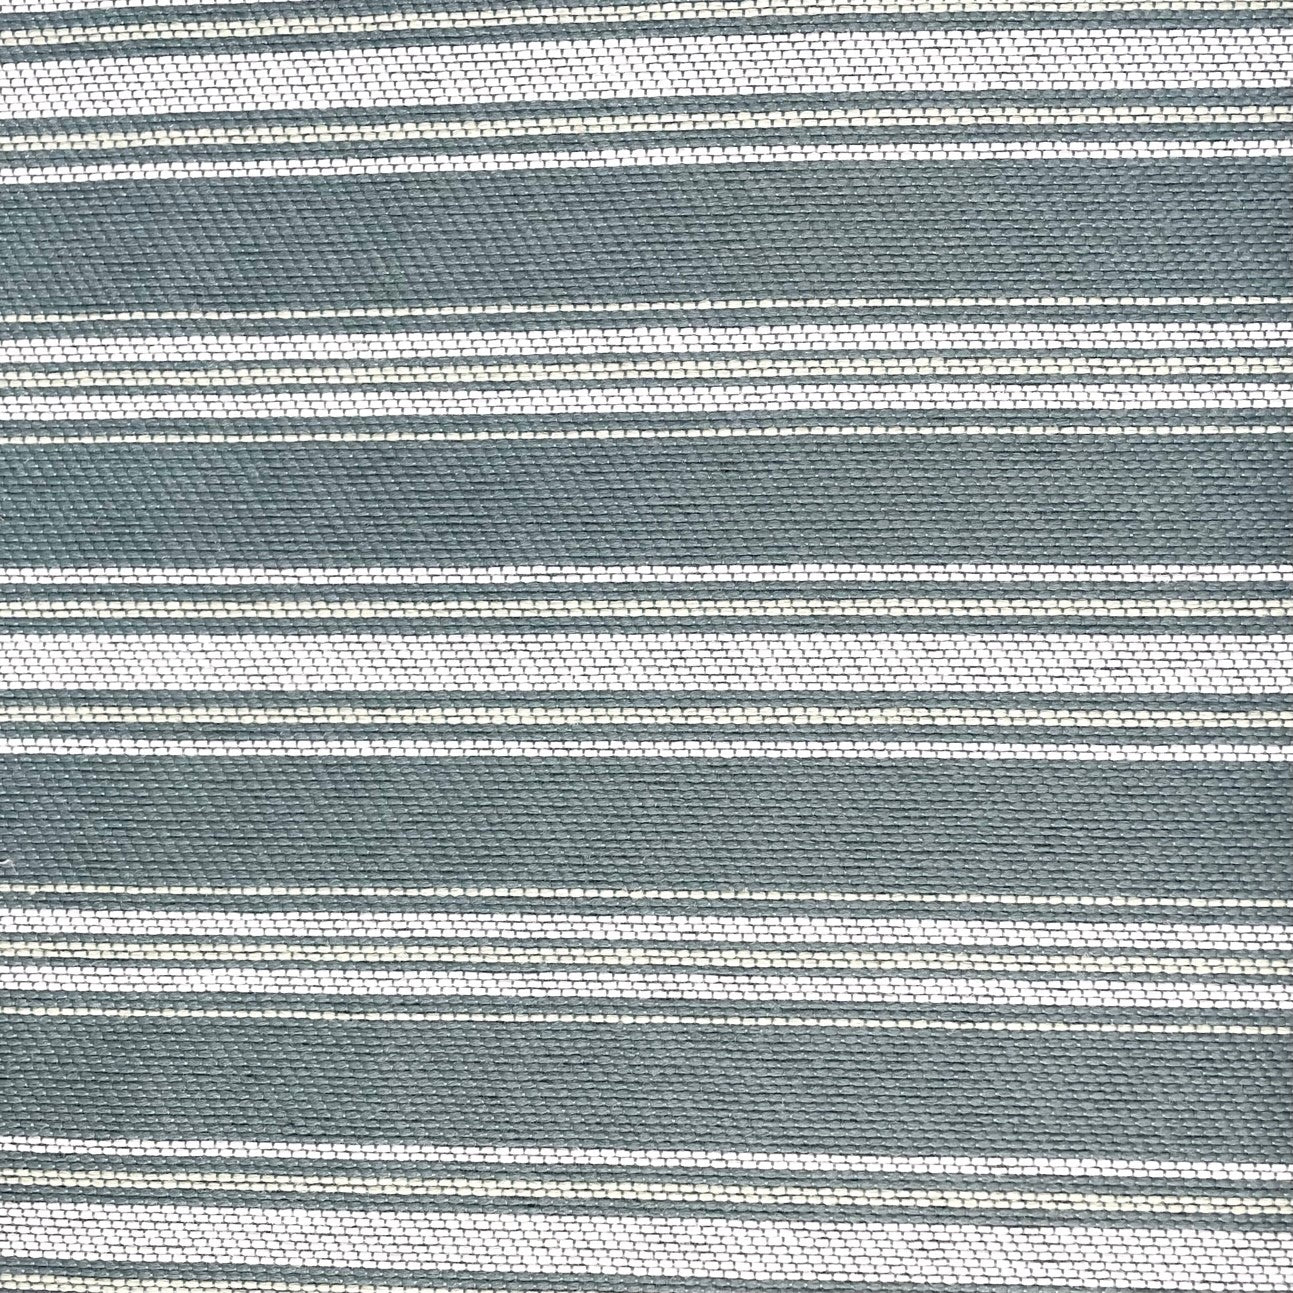 Fabric Swatch - Outdoor Ocean Stripe